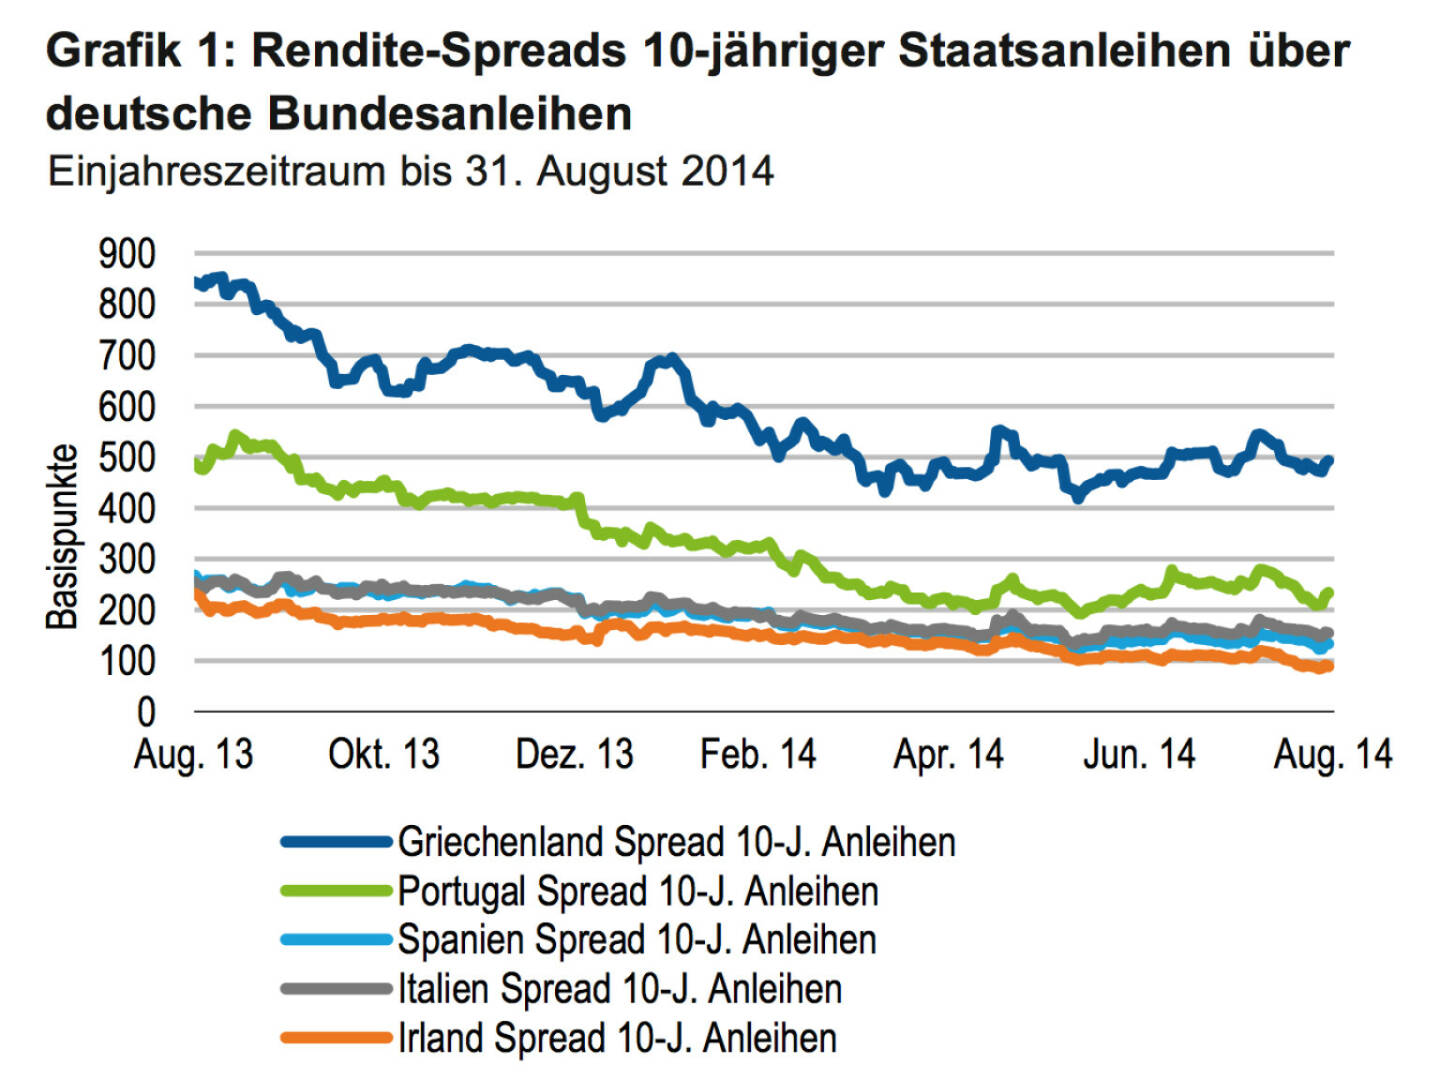 Rendite-Spreads 10-jähriger Staatsanleihen Griechenland, Portugal, Spanien, Italien, Irland (c) Franklin Templeton